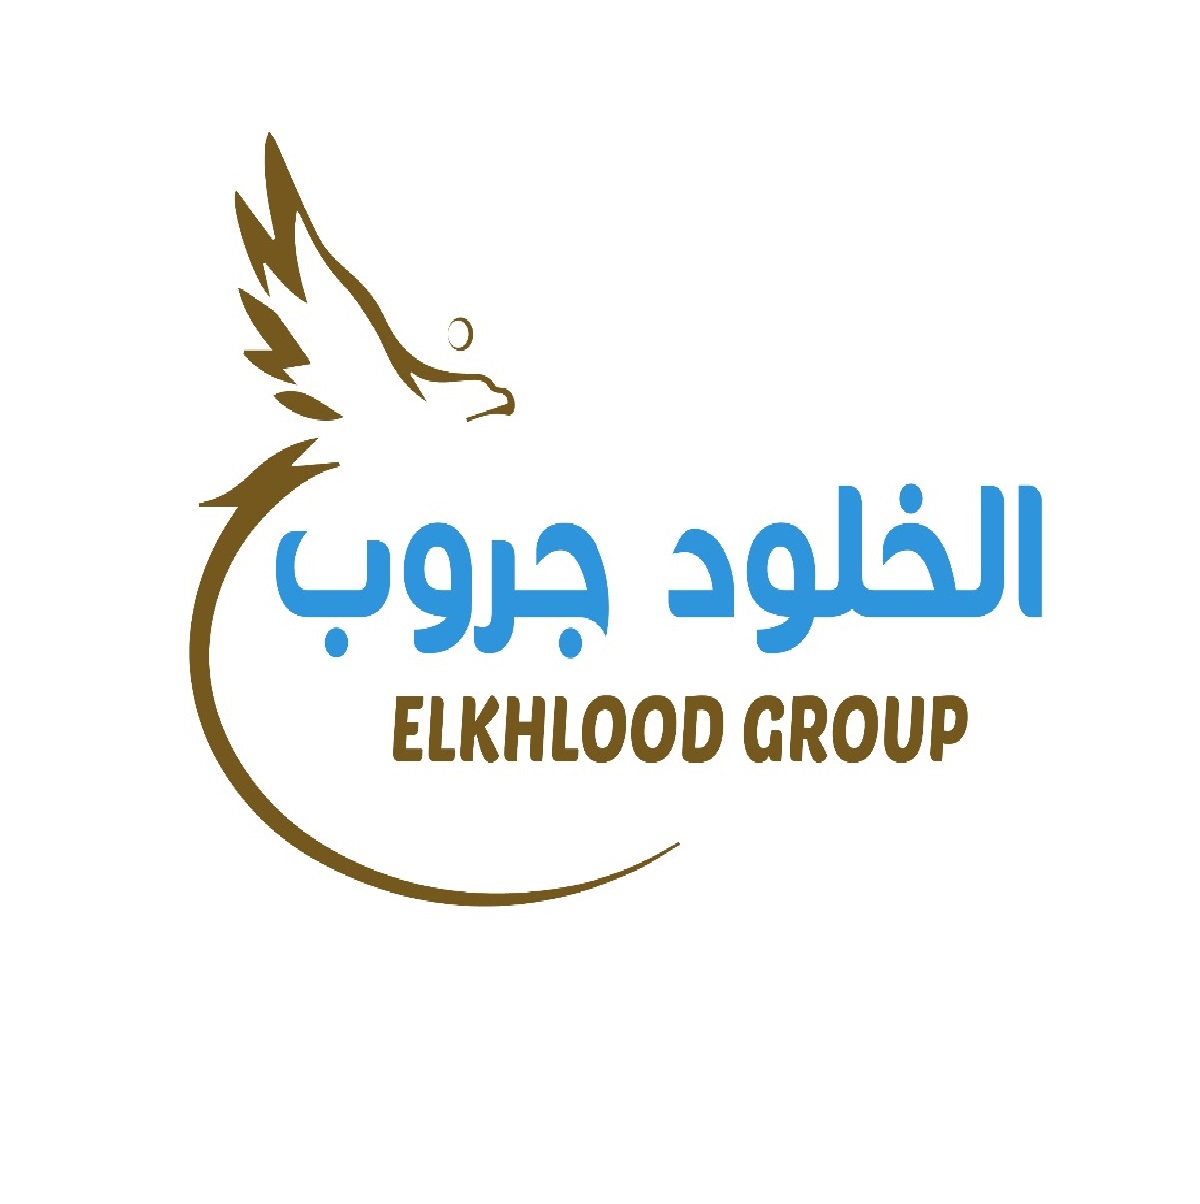 El-khlood Group